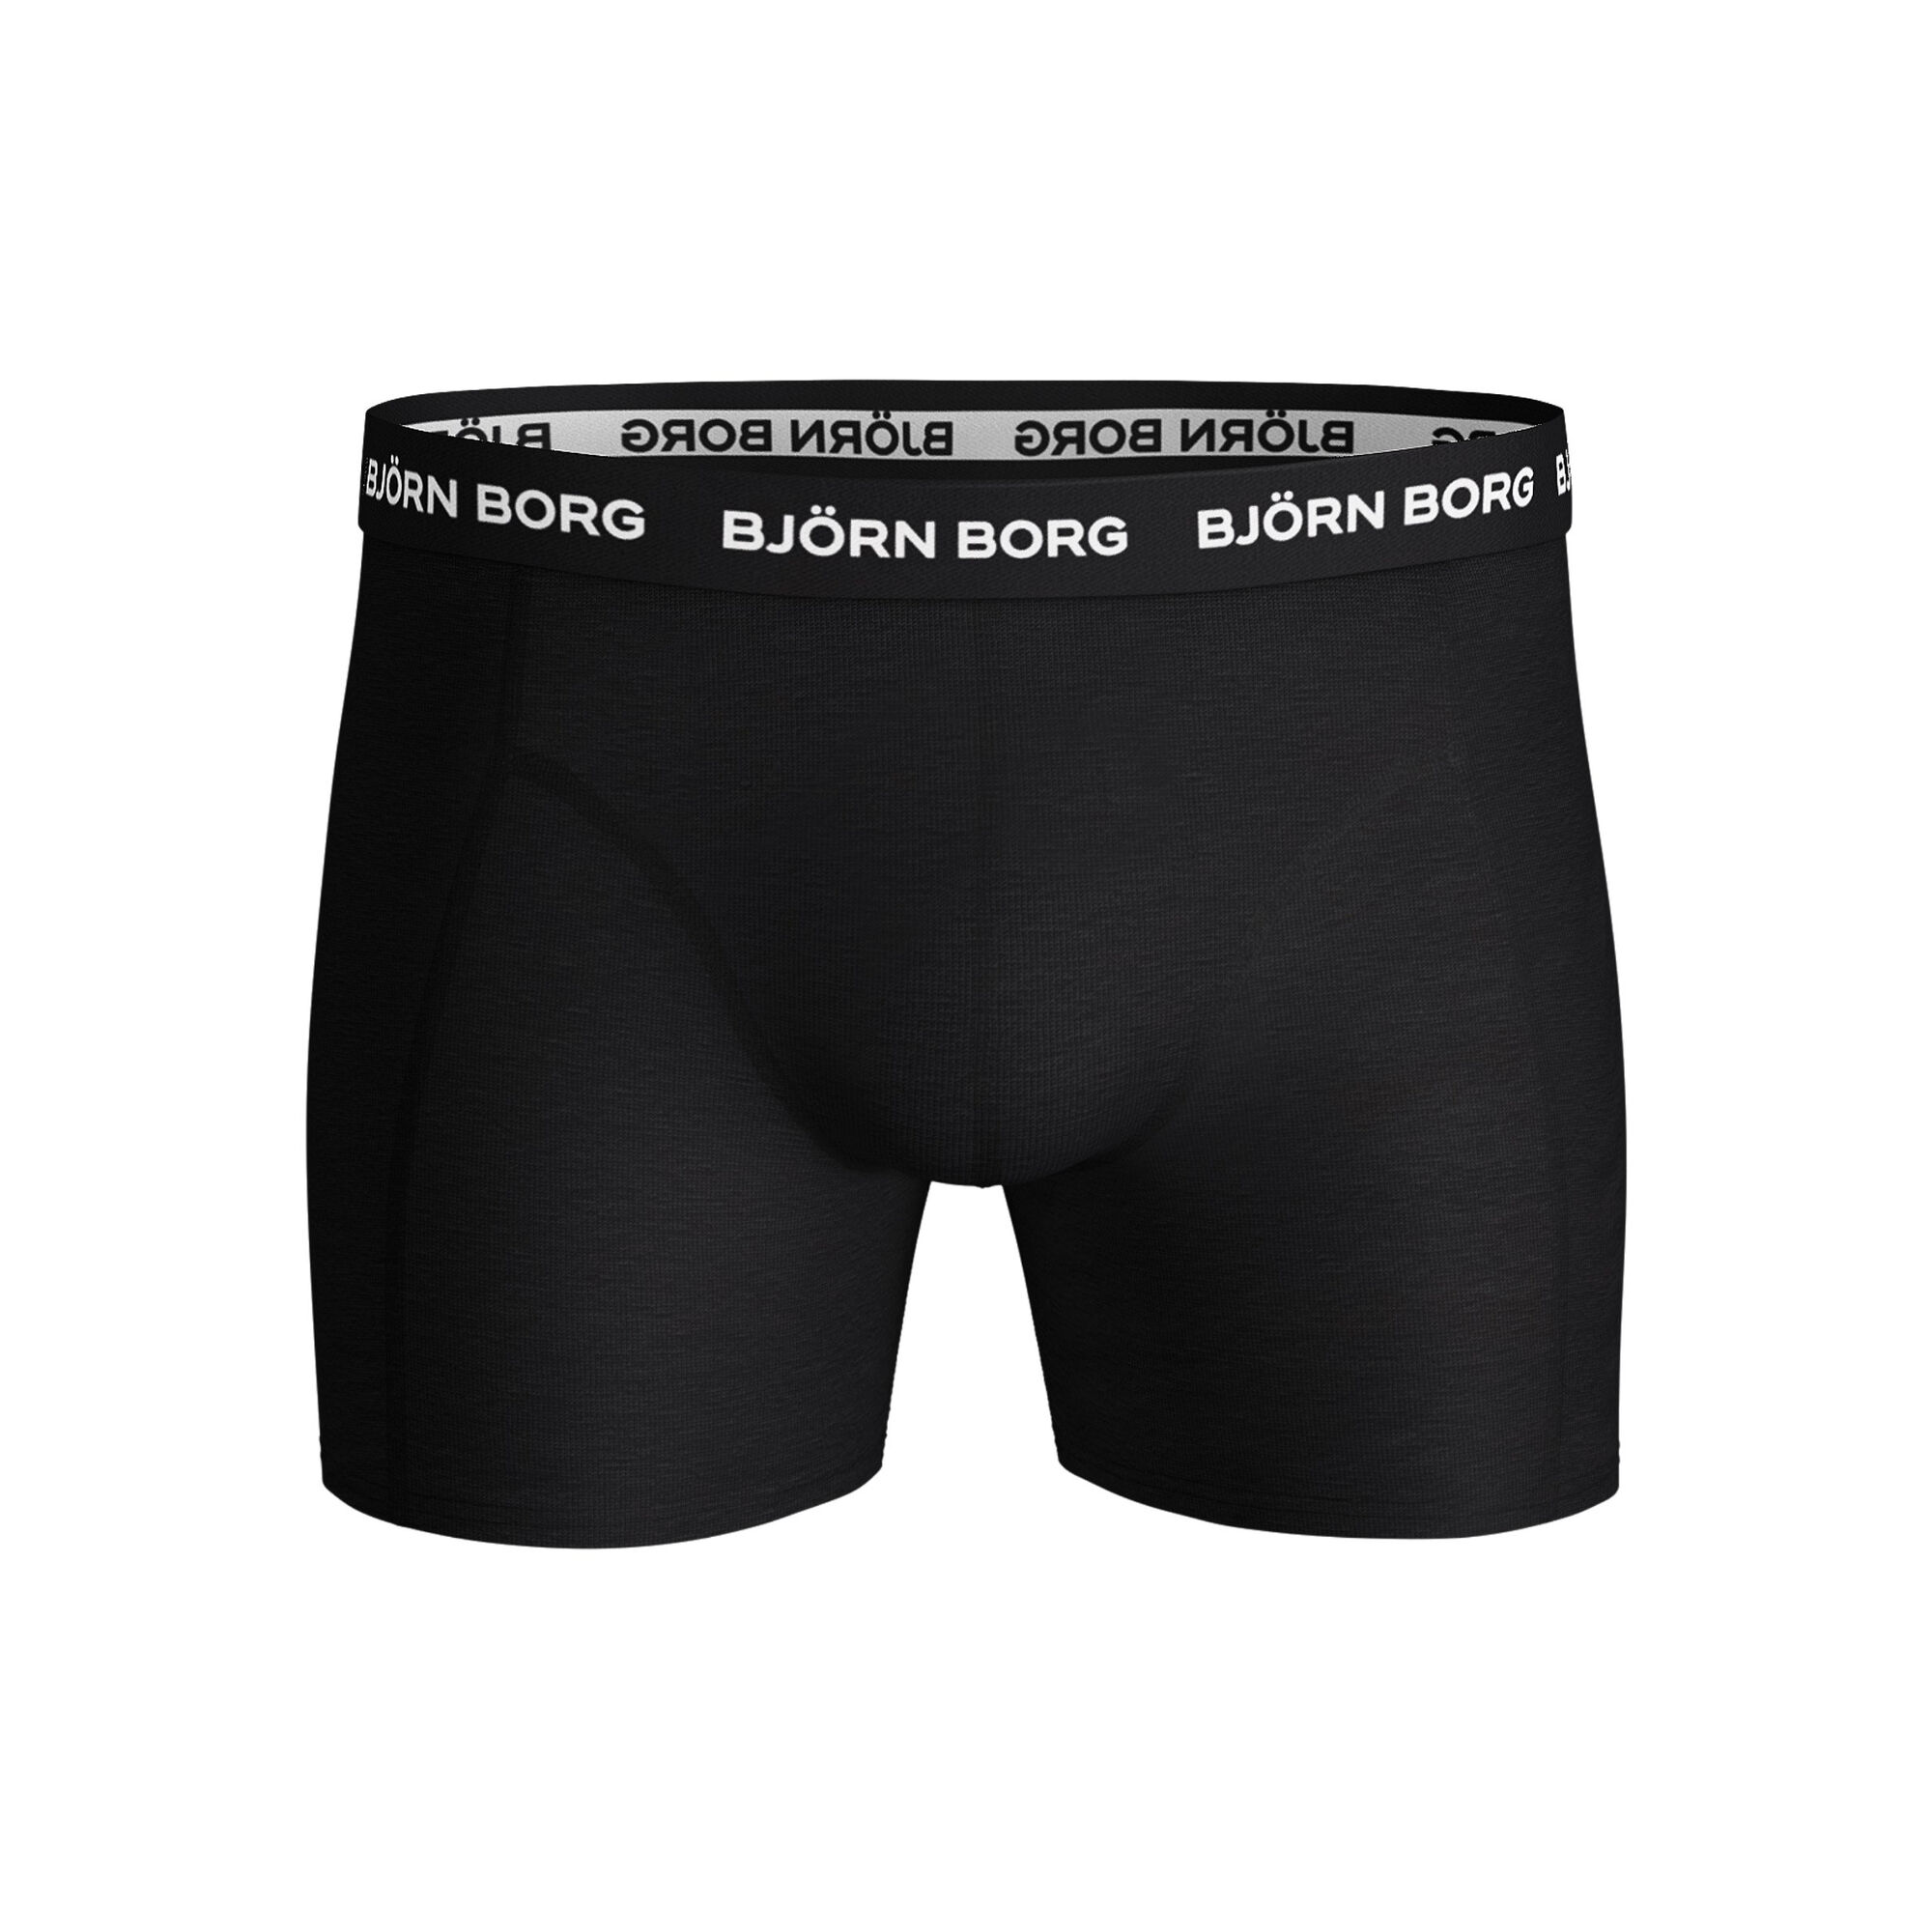 Buy Björn Borg Solid Sammy Boxer Shorts 5 Pack Men Black, White